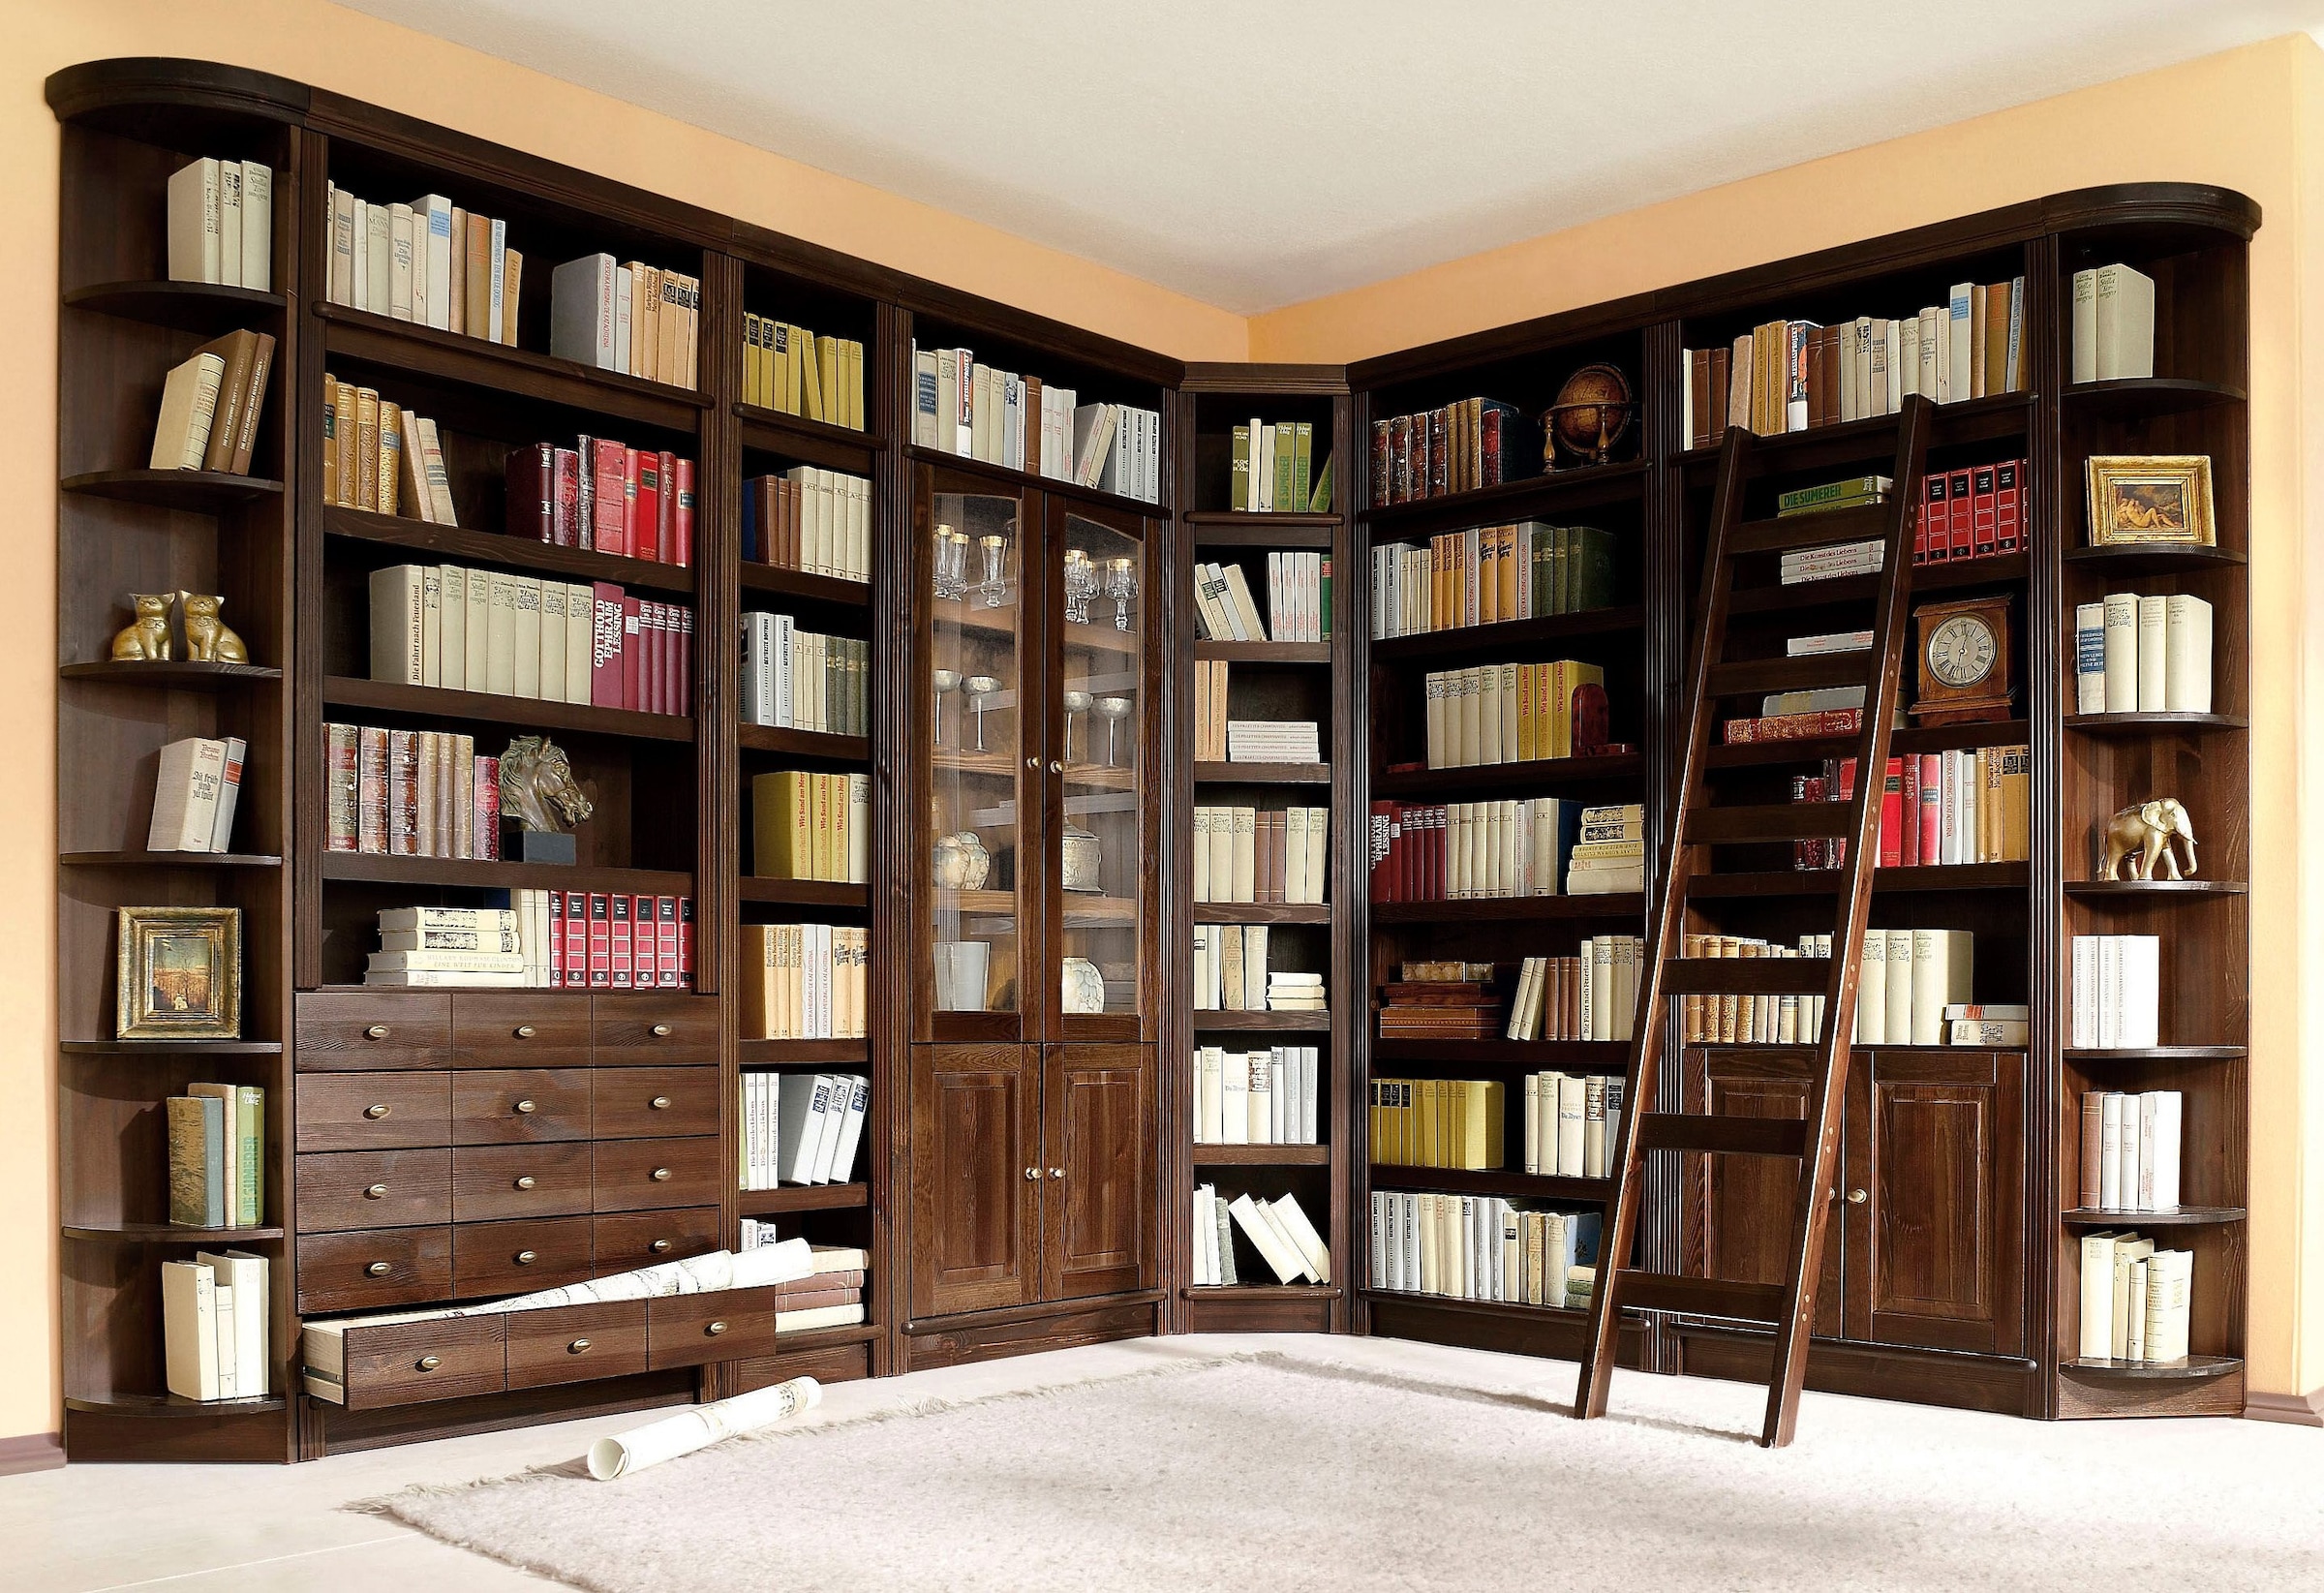 Home affaire Bücherregal »Soeren«, aus massiver Kiefer, in 2 Höhen, Tiefe 29 cm, mit 5 Schubkästen